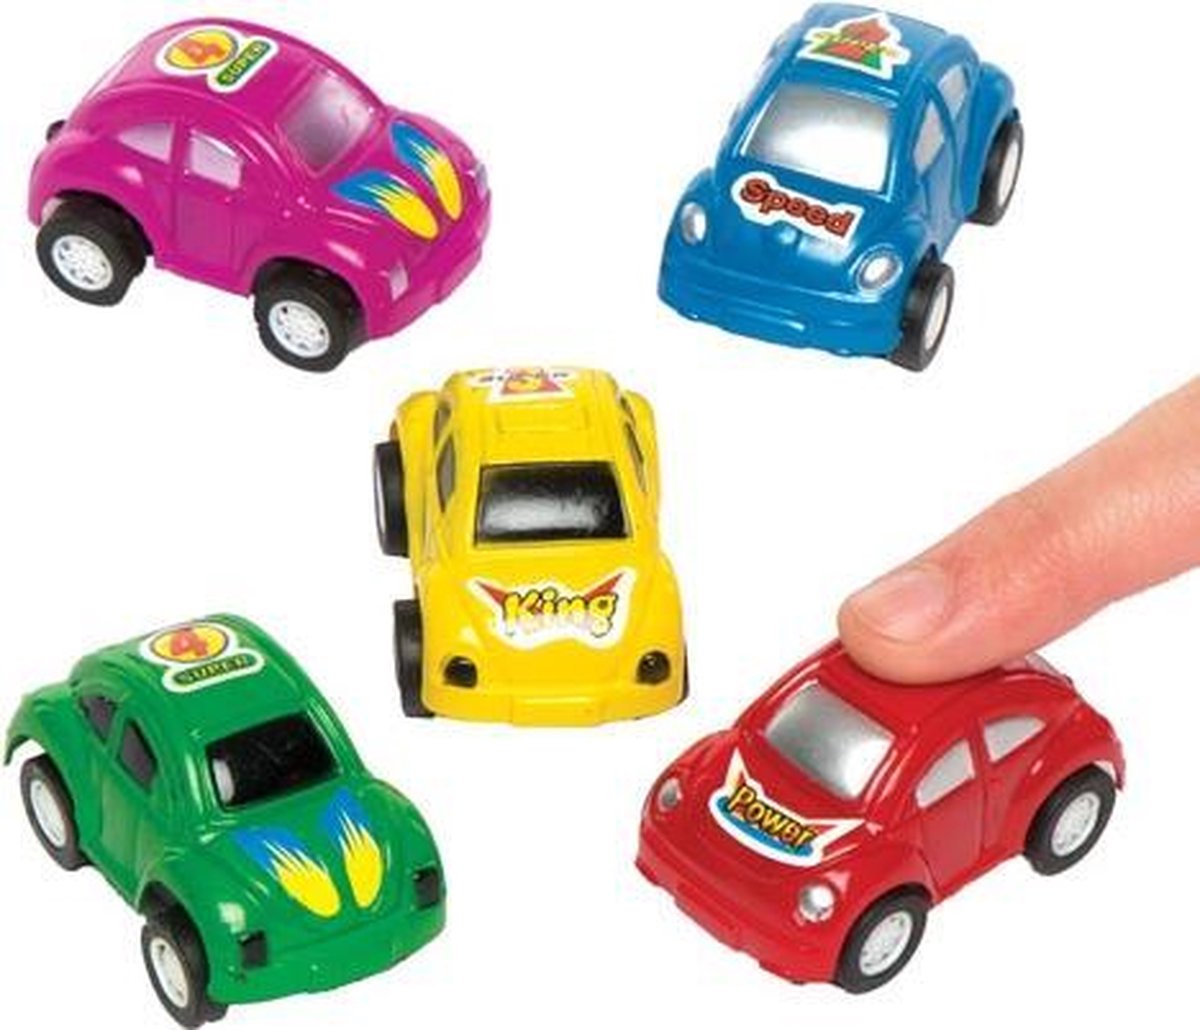 terugtrek-raceautootjes. speelgoed voor kinderen. Perfect voor... bol.com